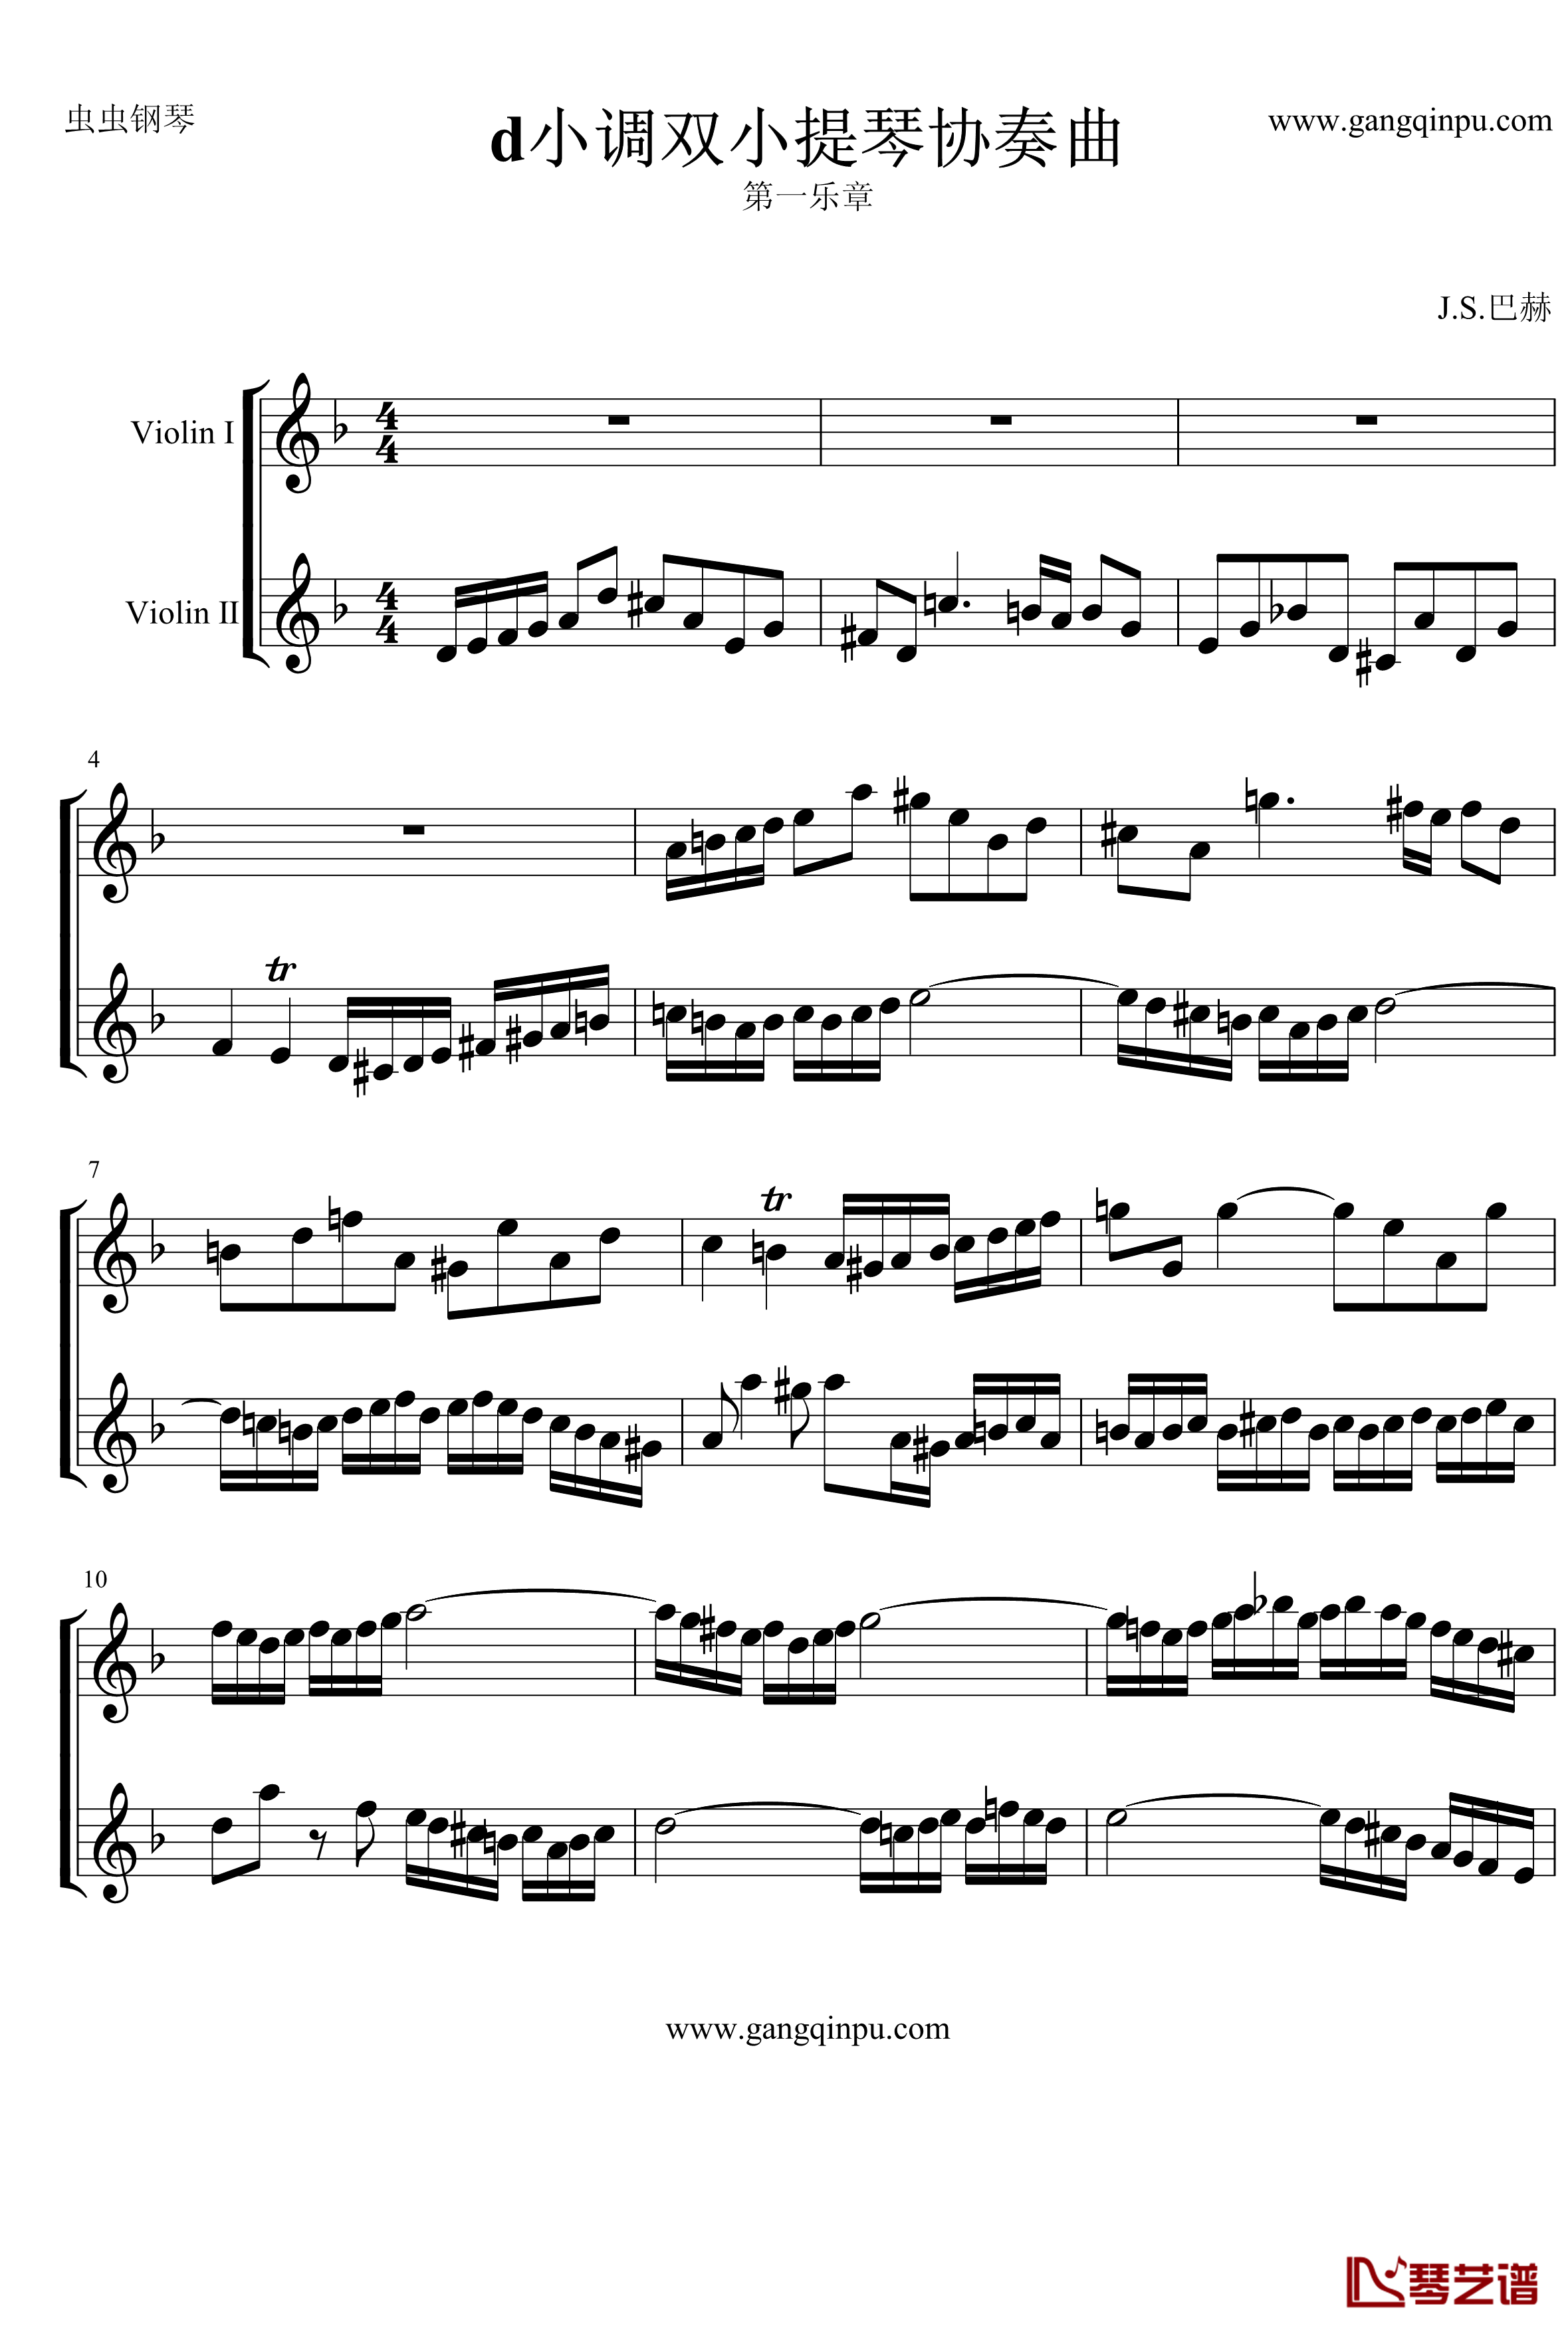 d小调双小提琴协奏曲钢琴谱-第1乐章-巴赫-P.E.Bach1